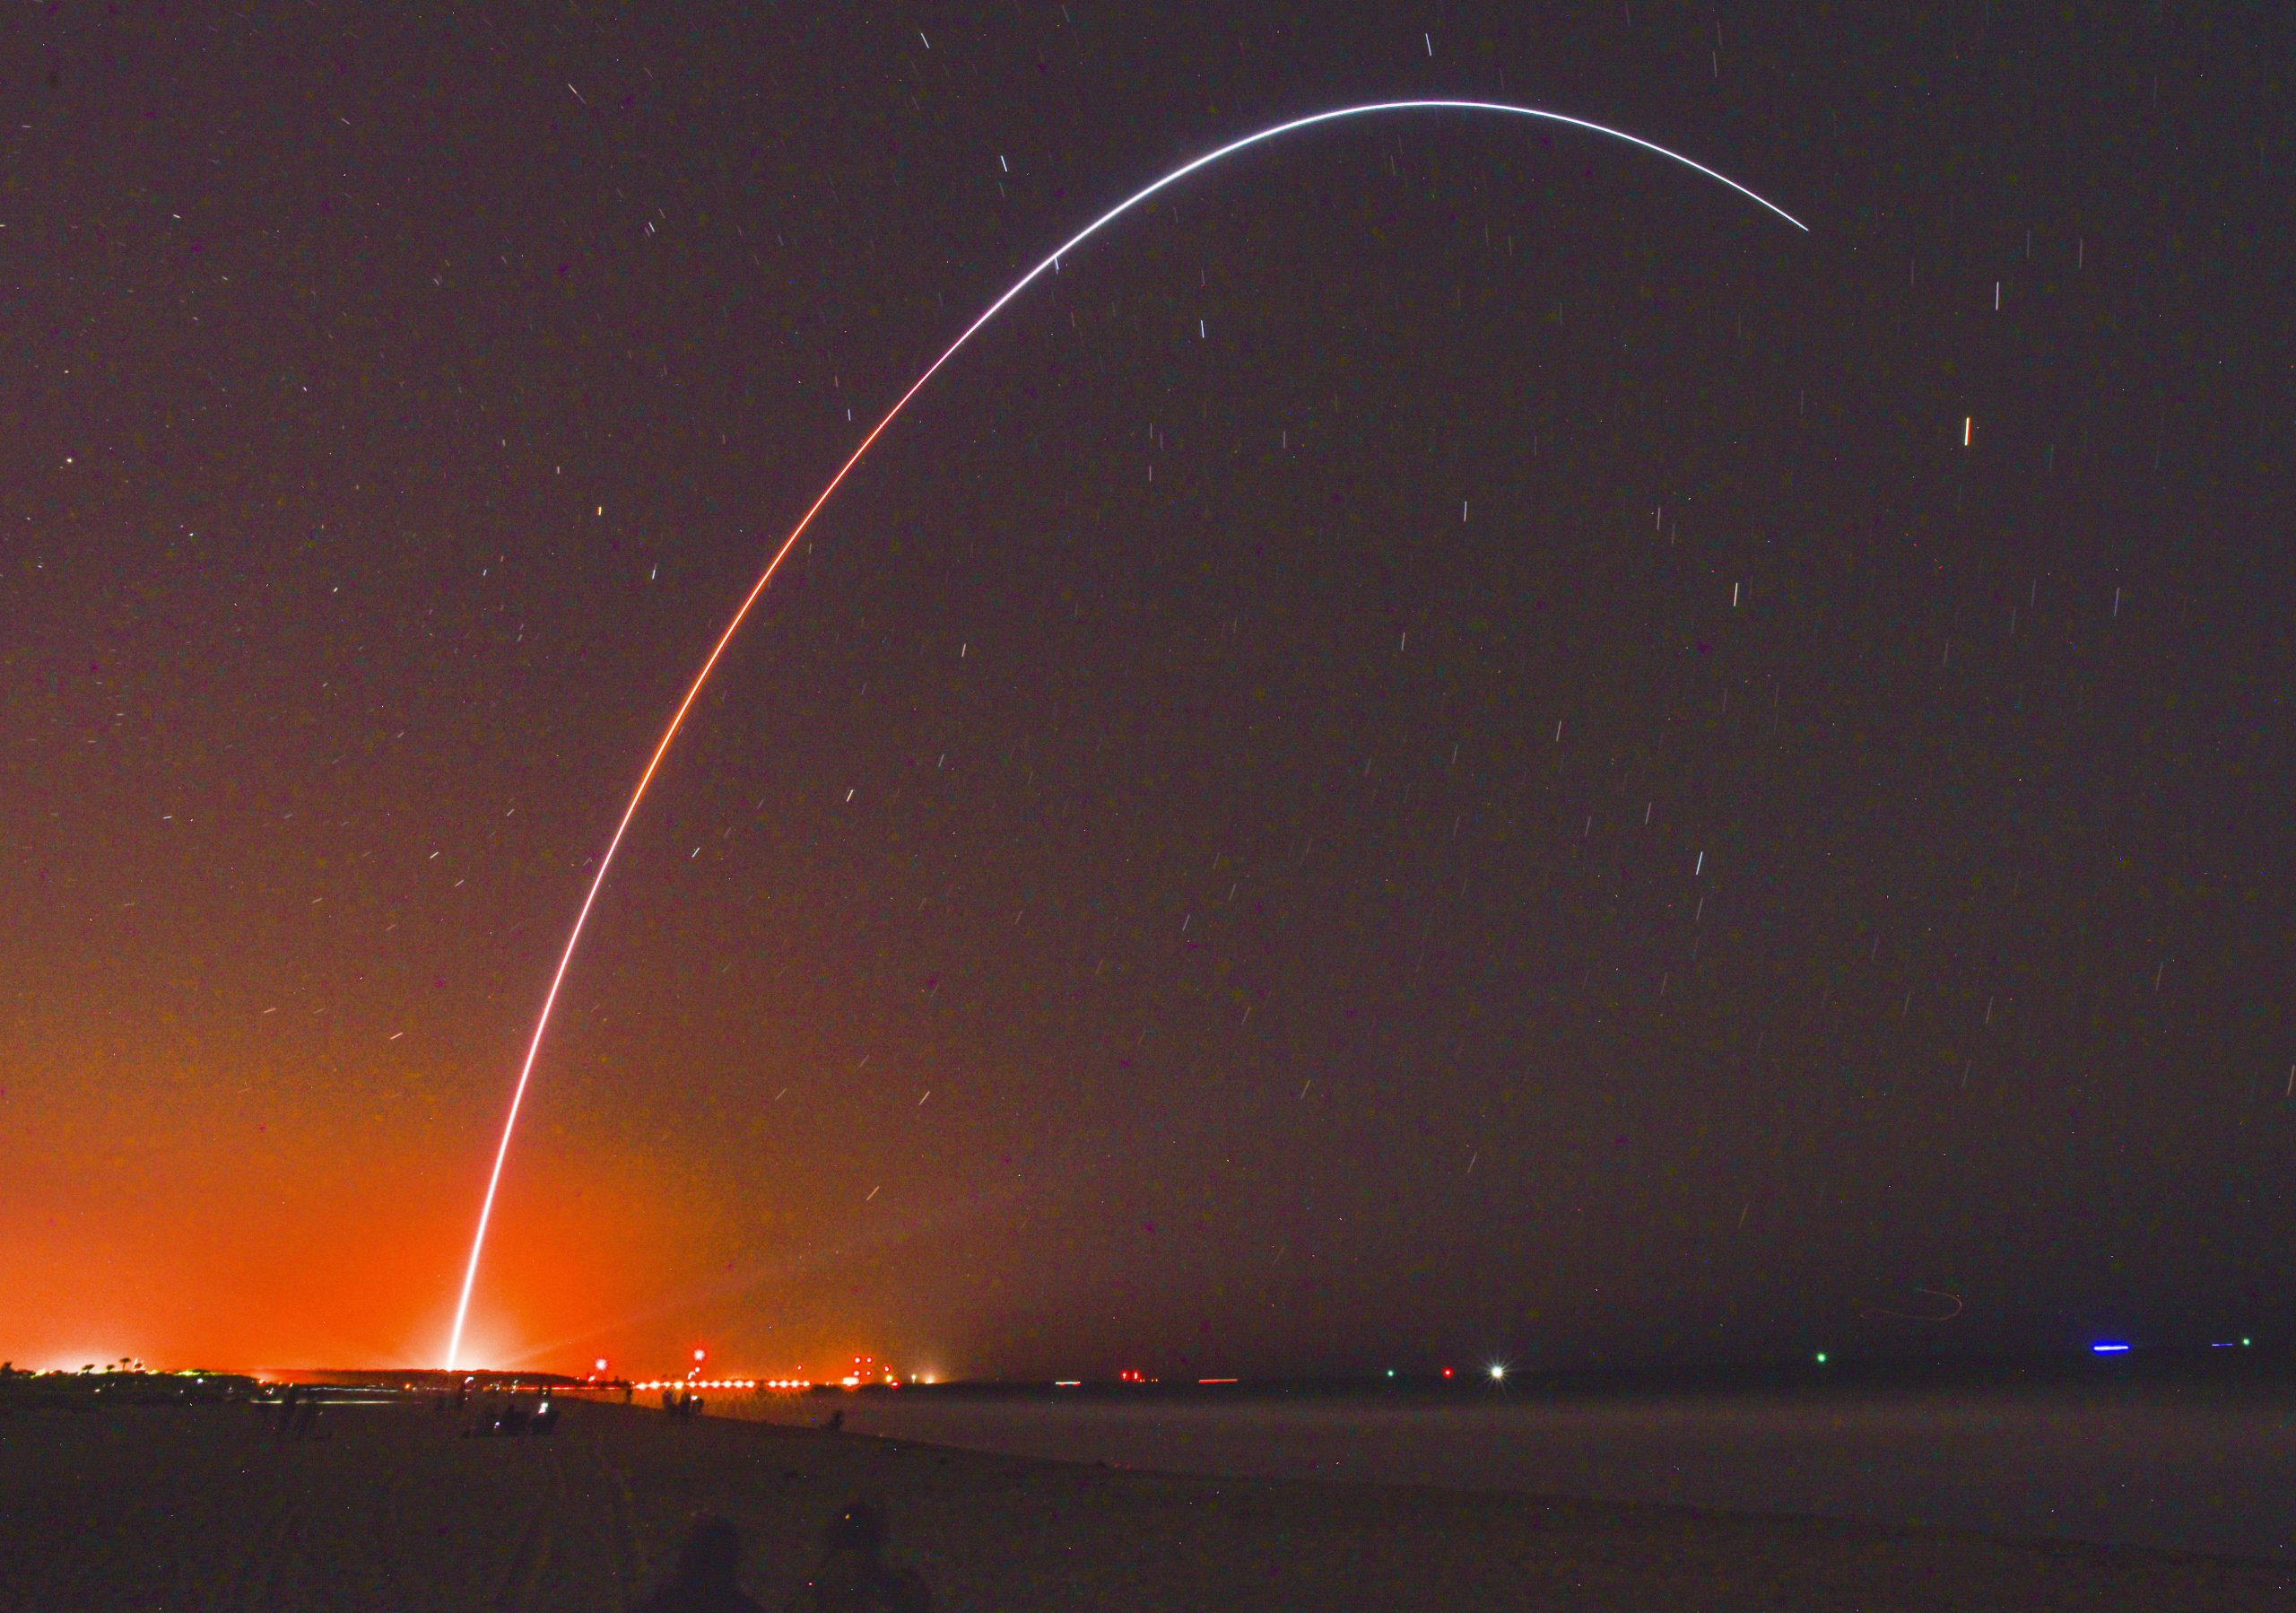 全球首枚3D打印火箭成功发射 但未能进入轨道